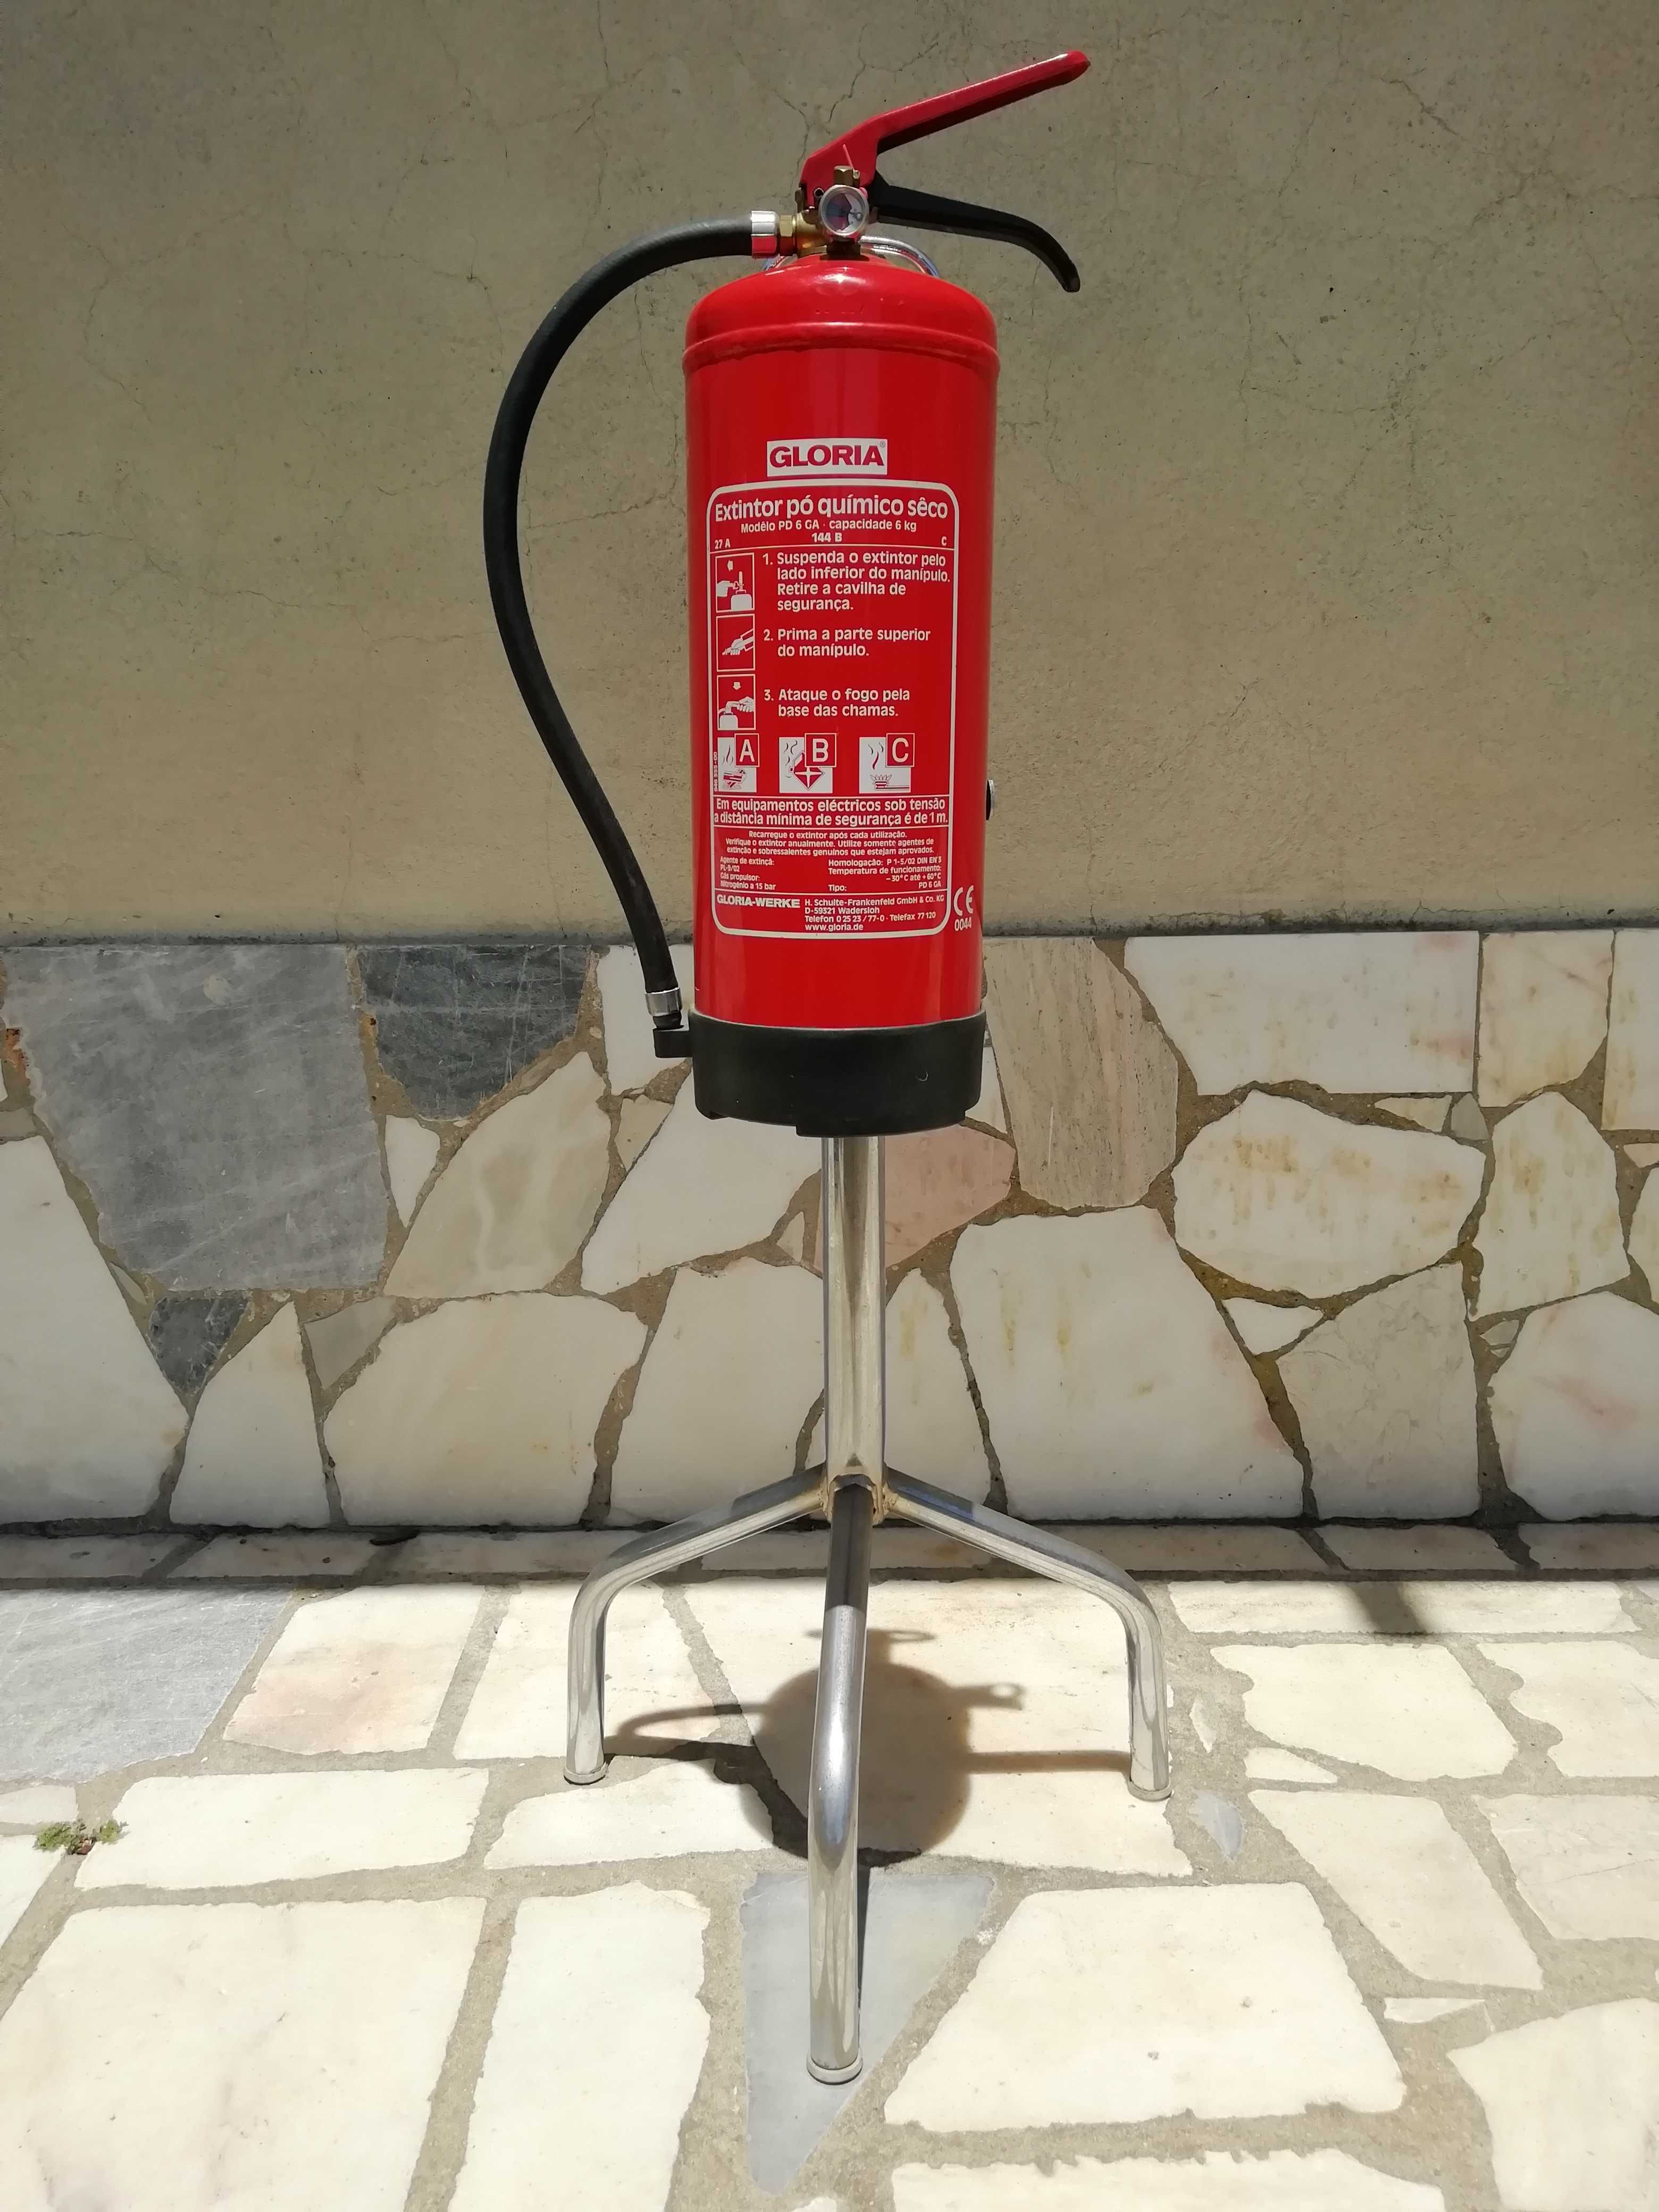 Extintor de Incêndios GLORIA PD 6 GA 6kg + Suporte de pé